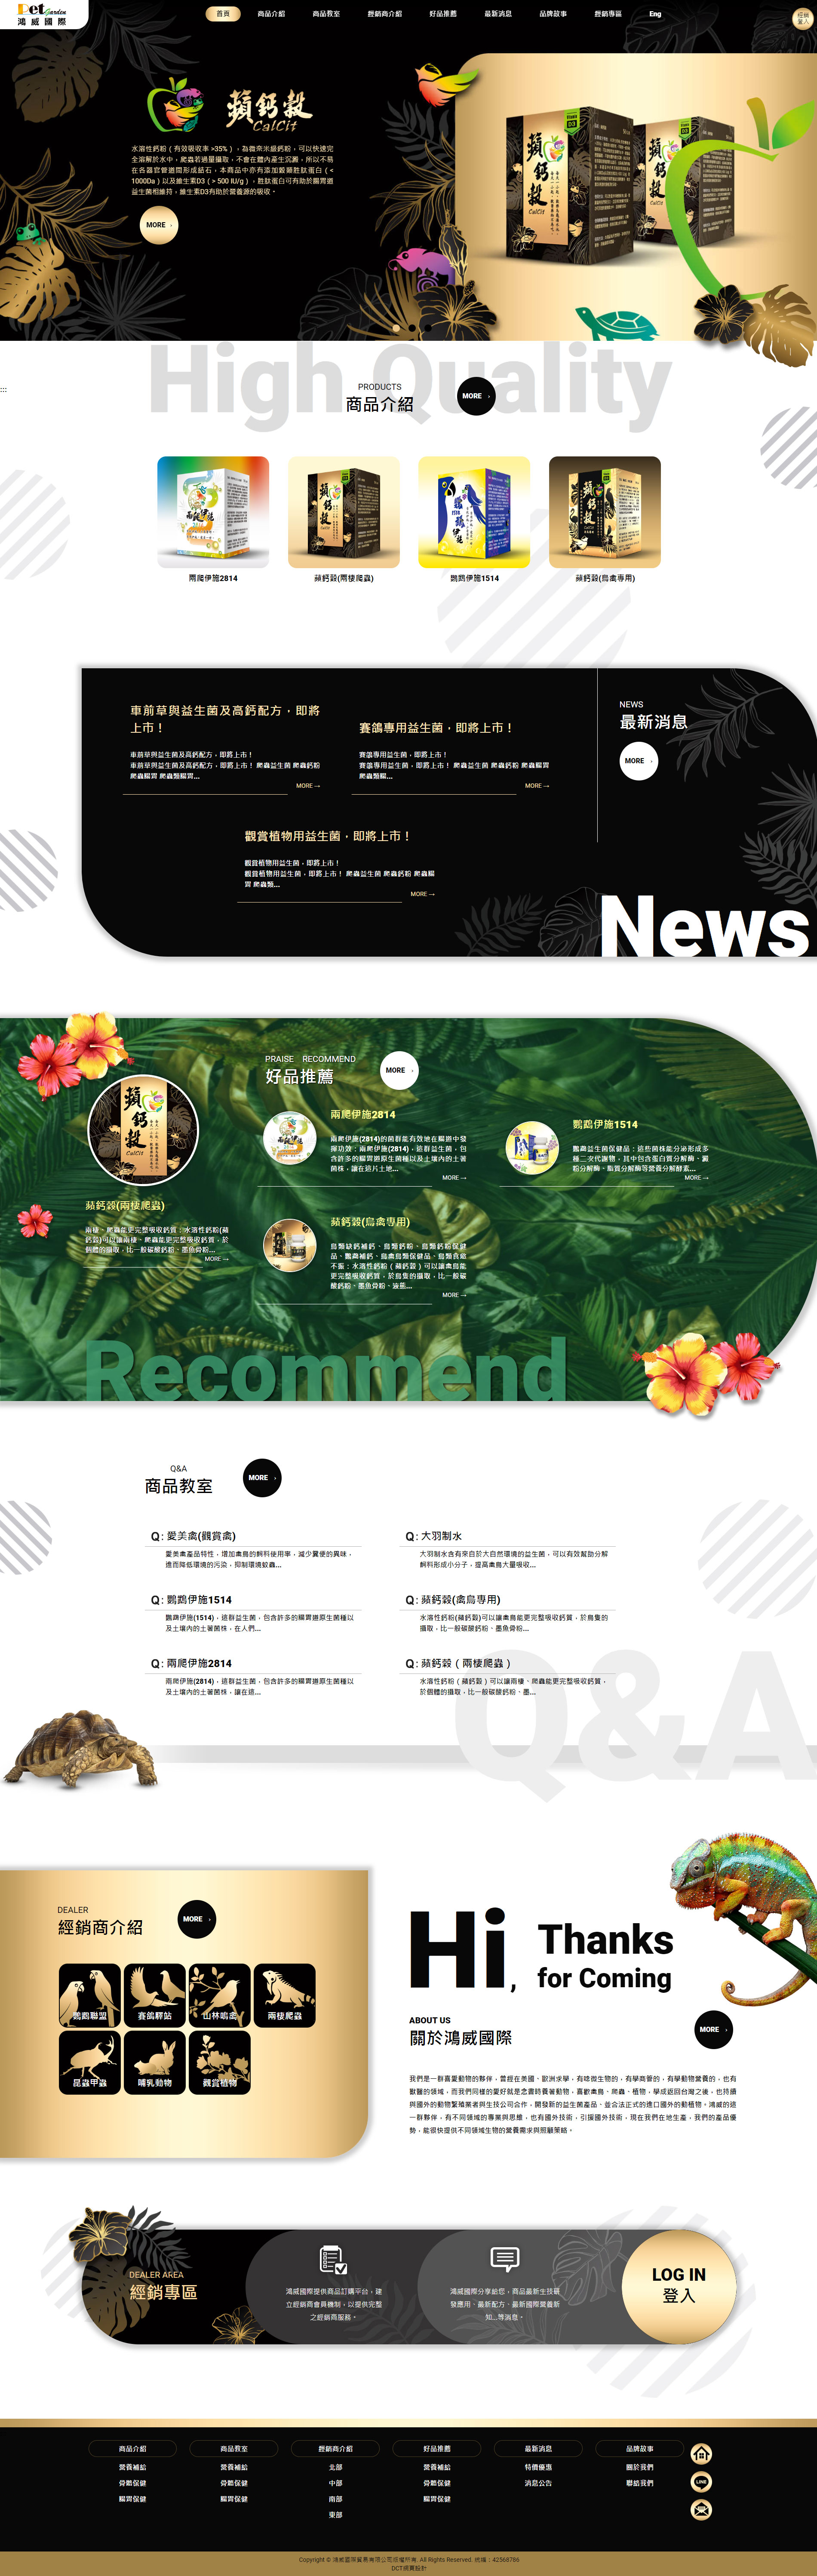 網頁設計案例-鴻威國際